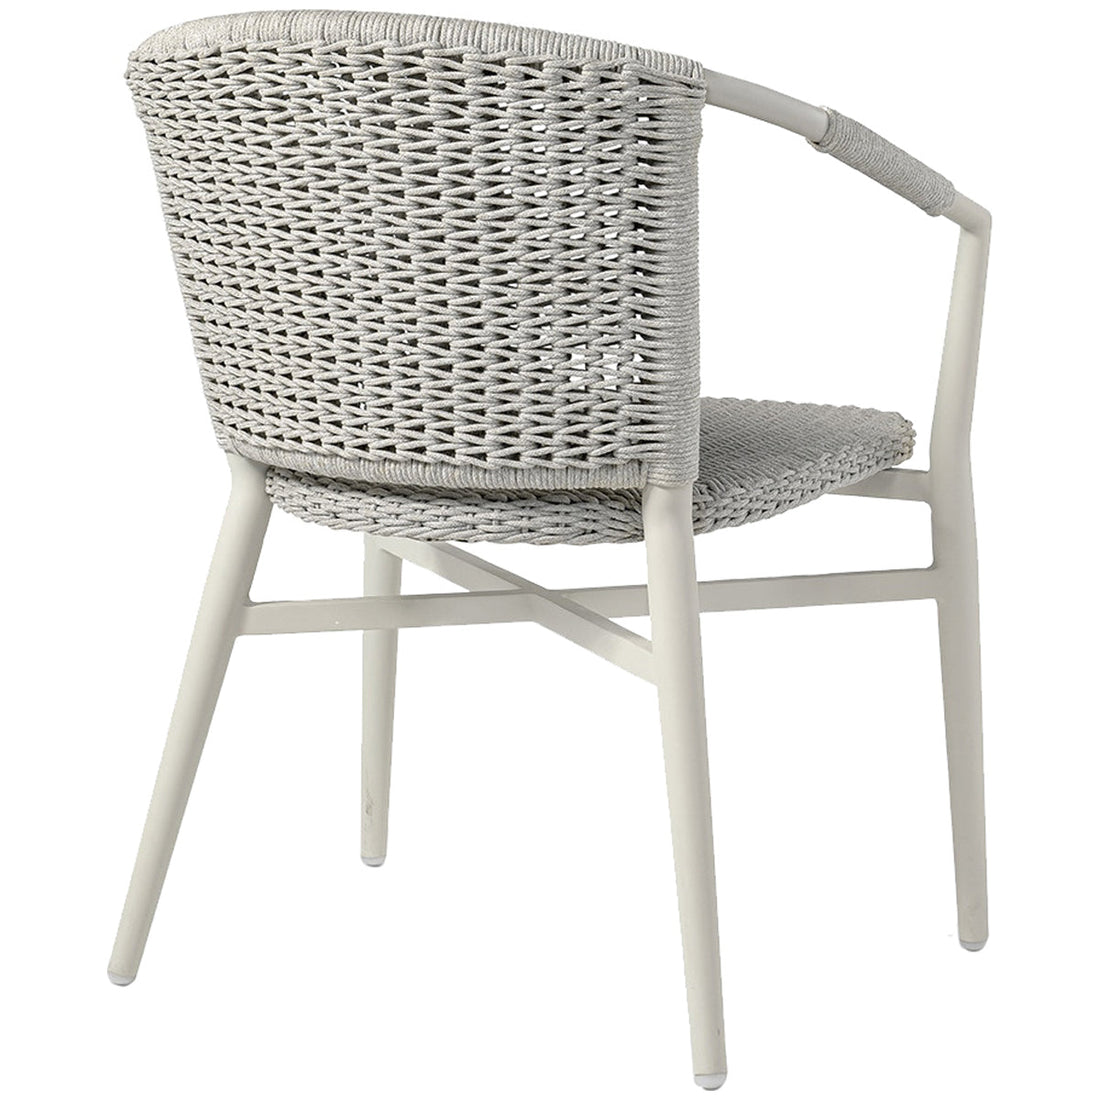 Palecek Nina Outdoor Stackable Arm Chair